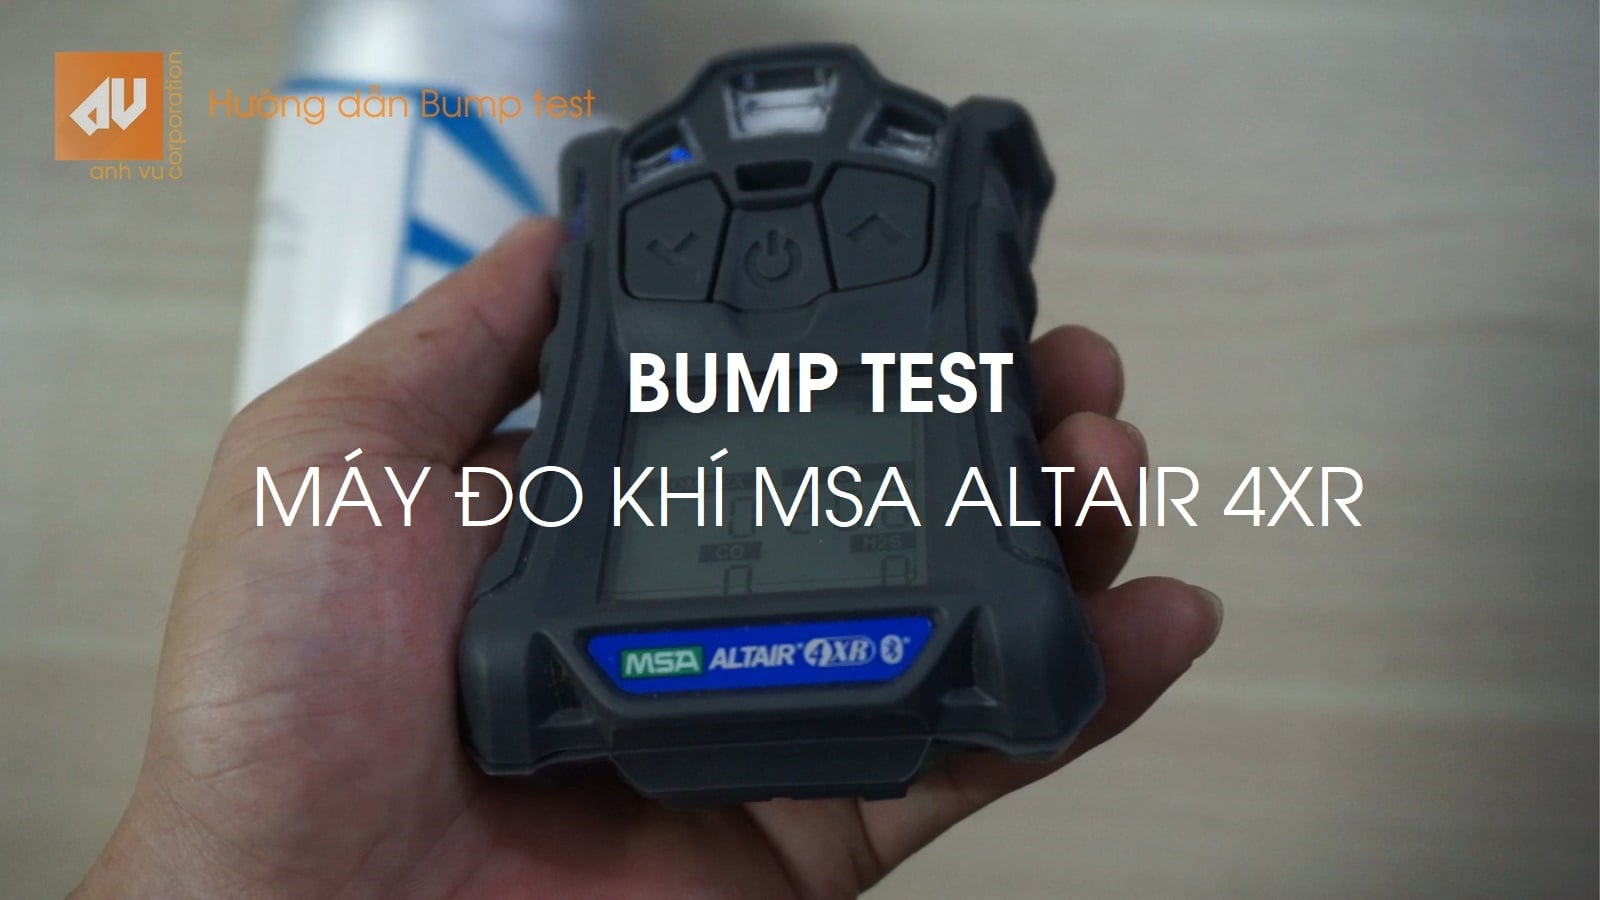 Máy đo khí MSA Altair 4XR: Video 5 – Hướng dẫn Bump test máy đo khí